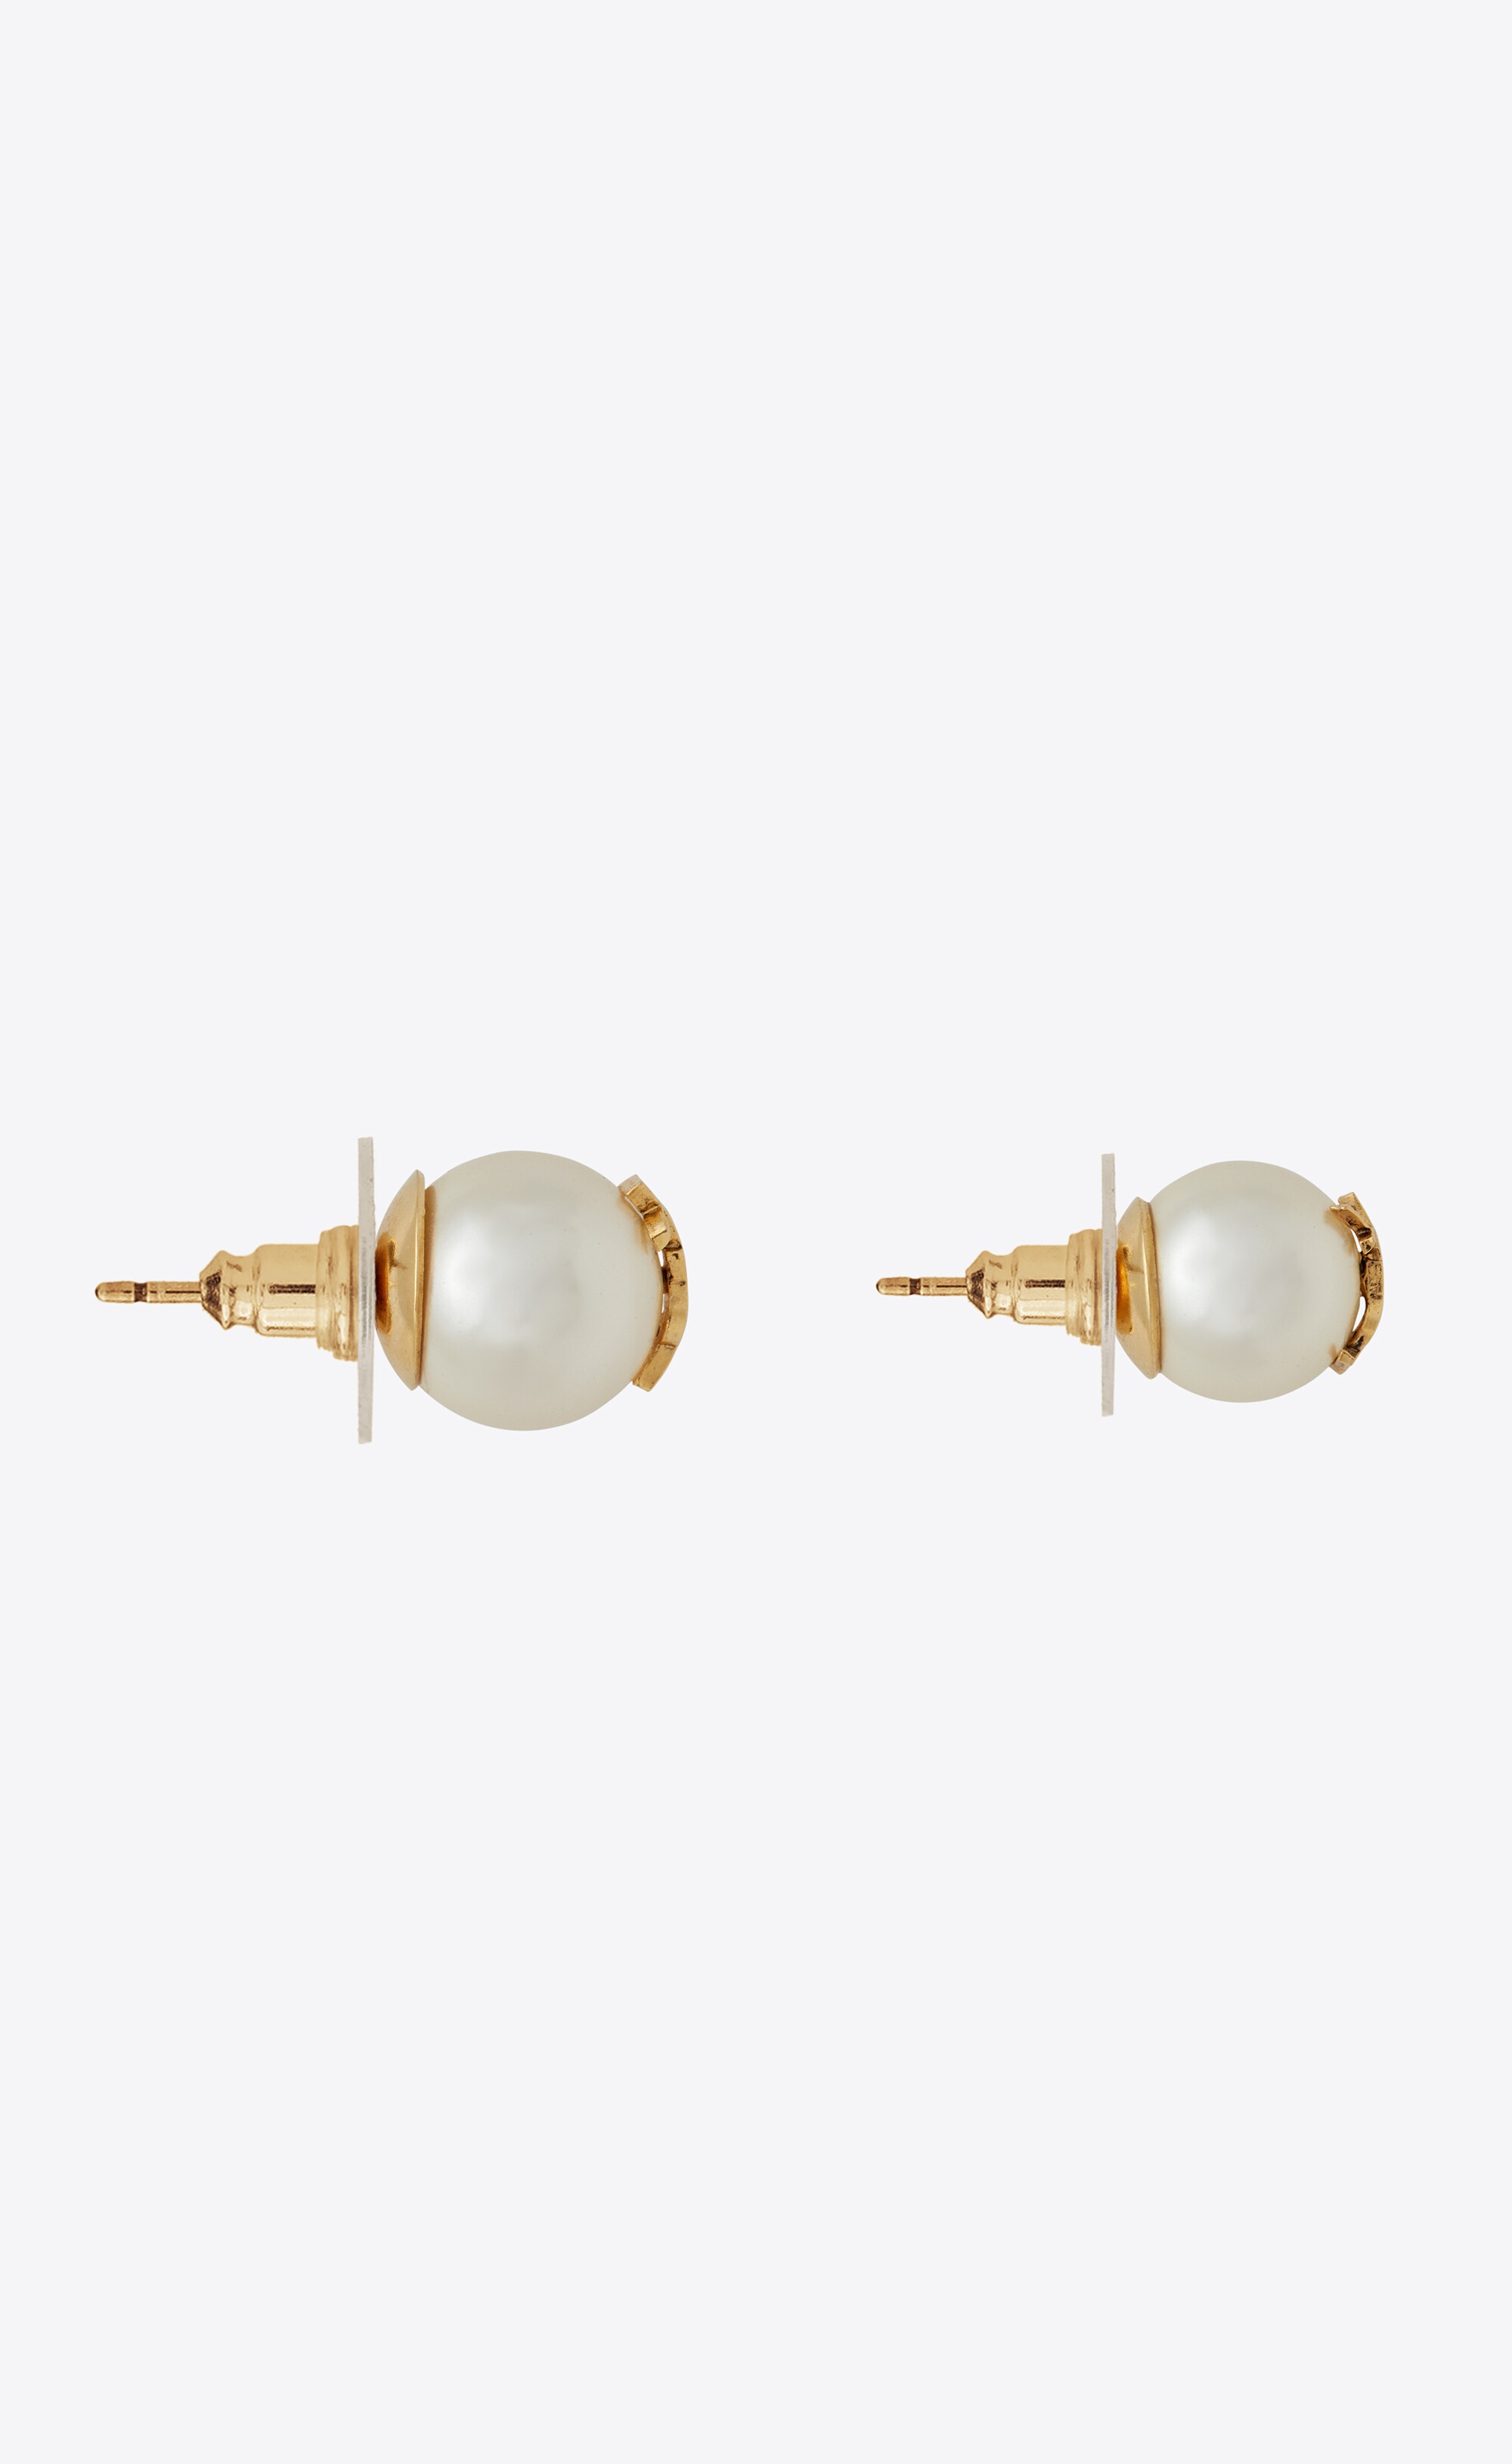 ysl pearl earrings in metal - 2